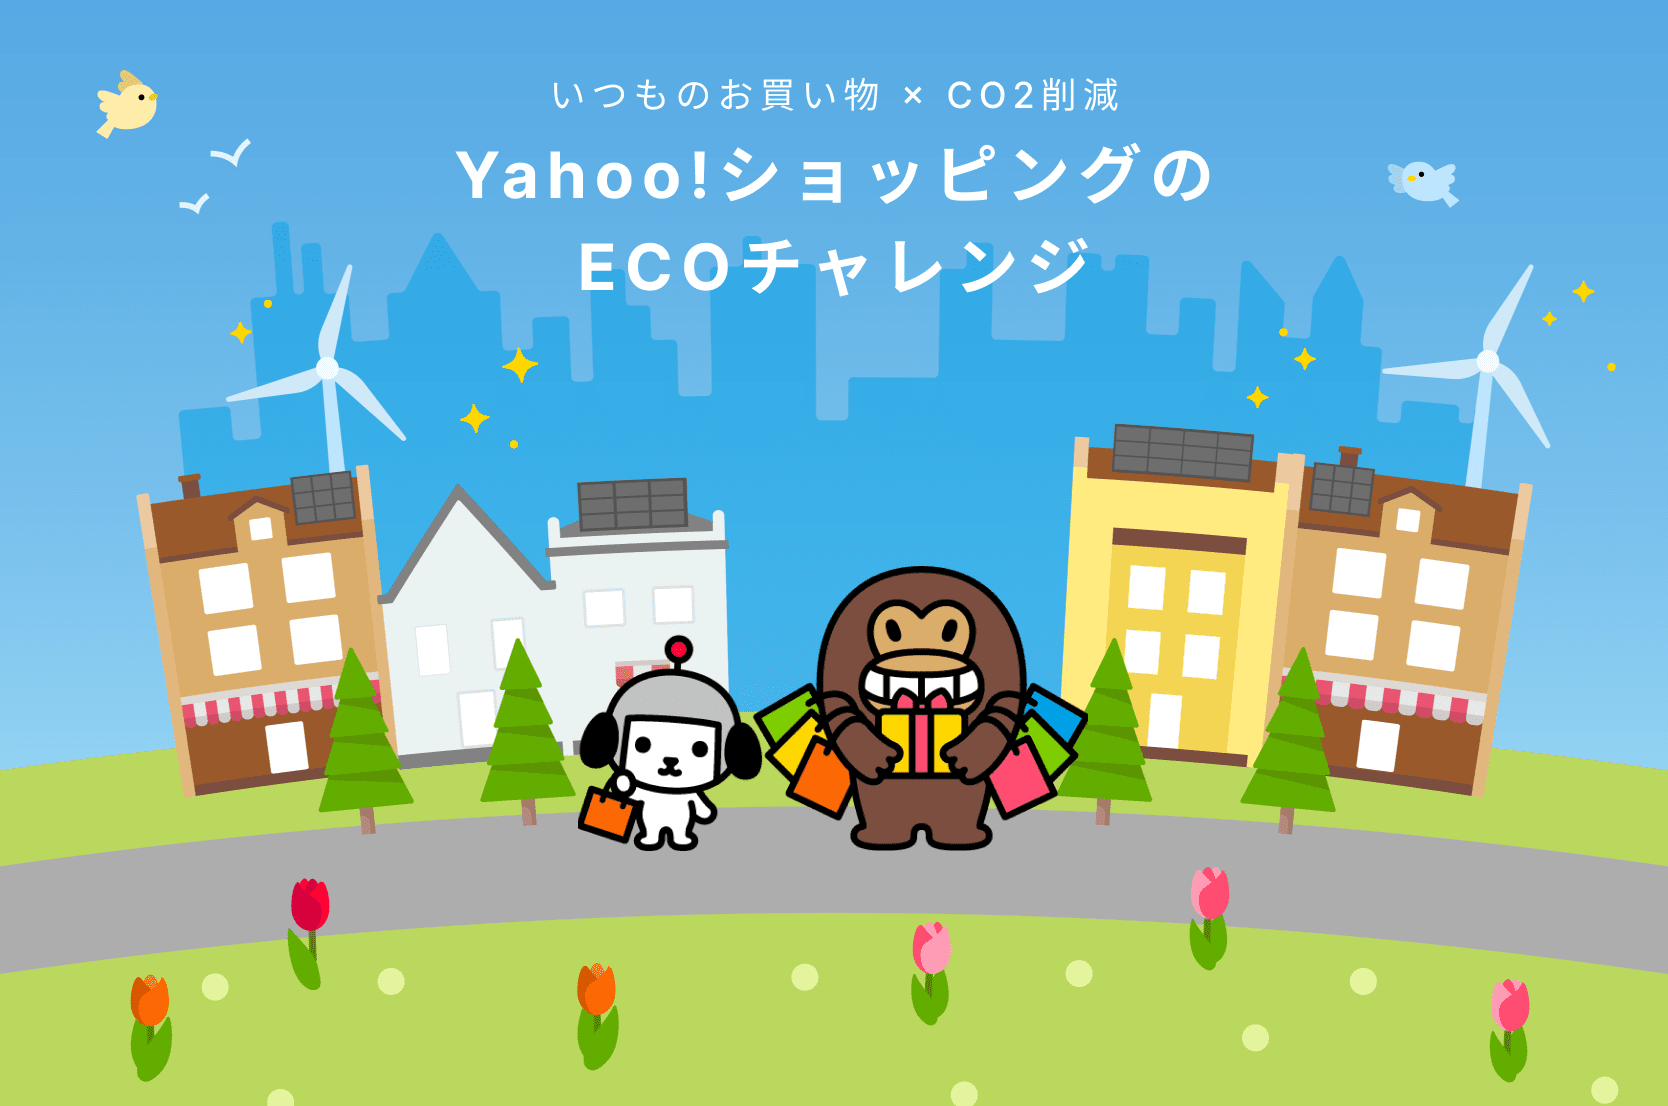 Yahoo!ショッピングの
ECOチャレンジ